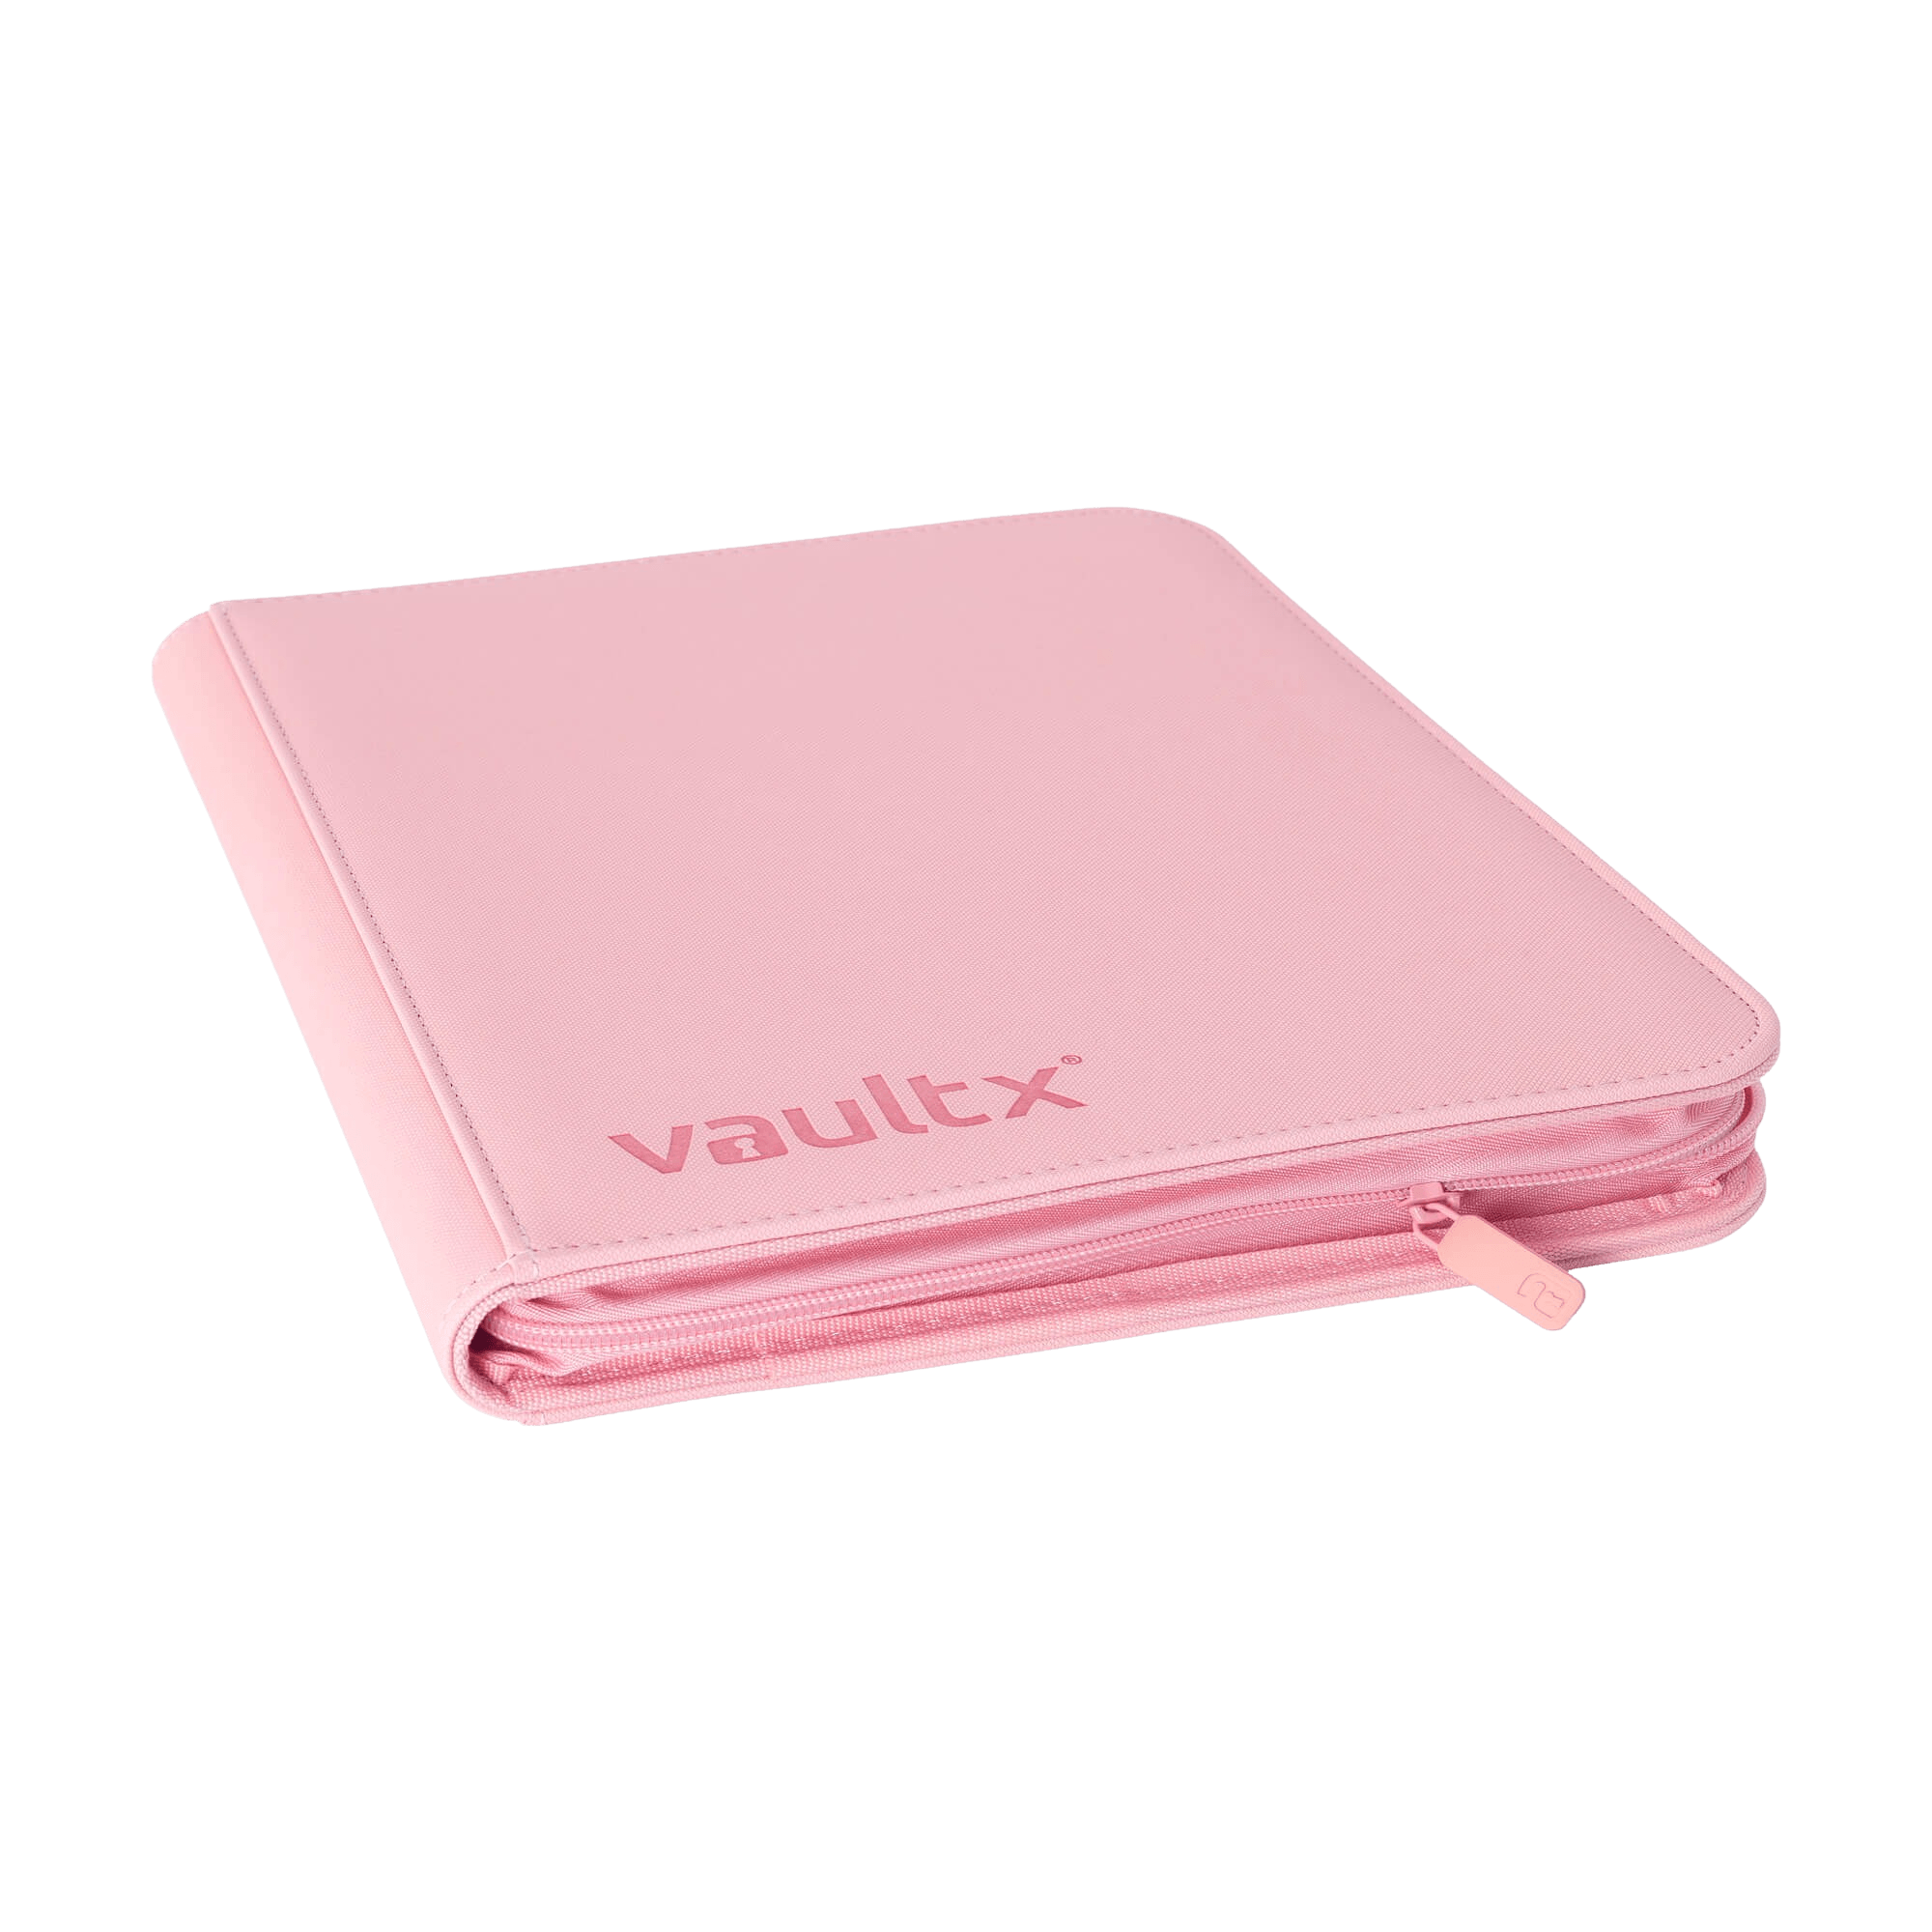 Vault X 12-Pocket Exo-Tec® Zip Binder - Just Pink - The Card Vault